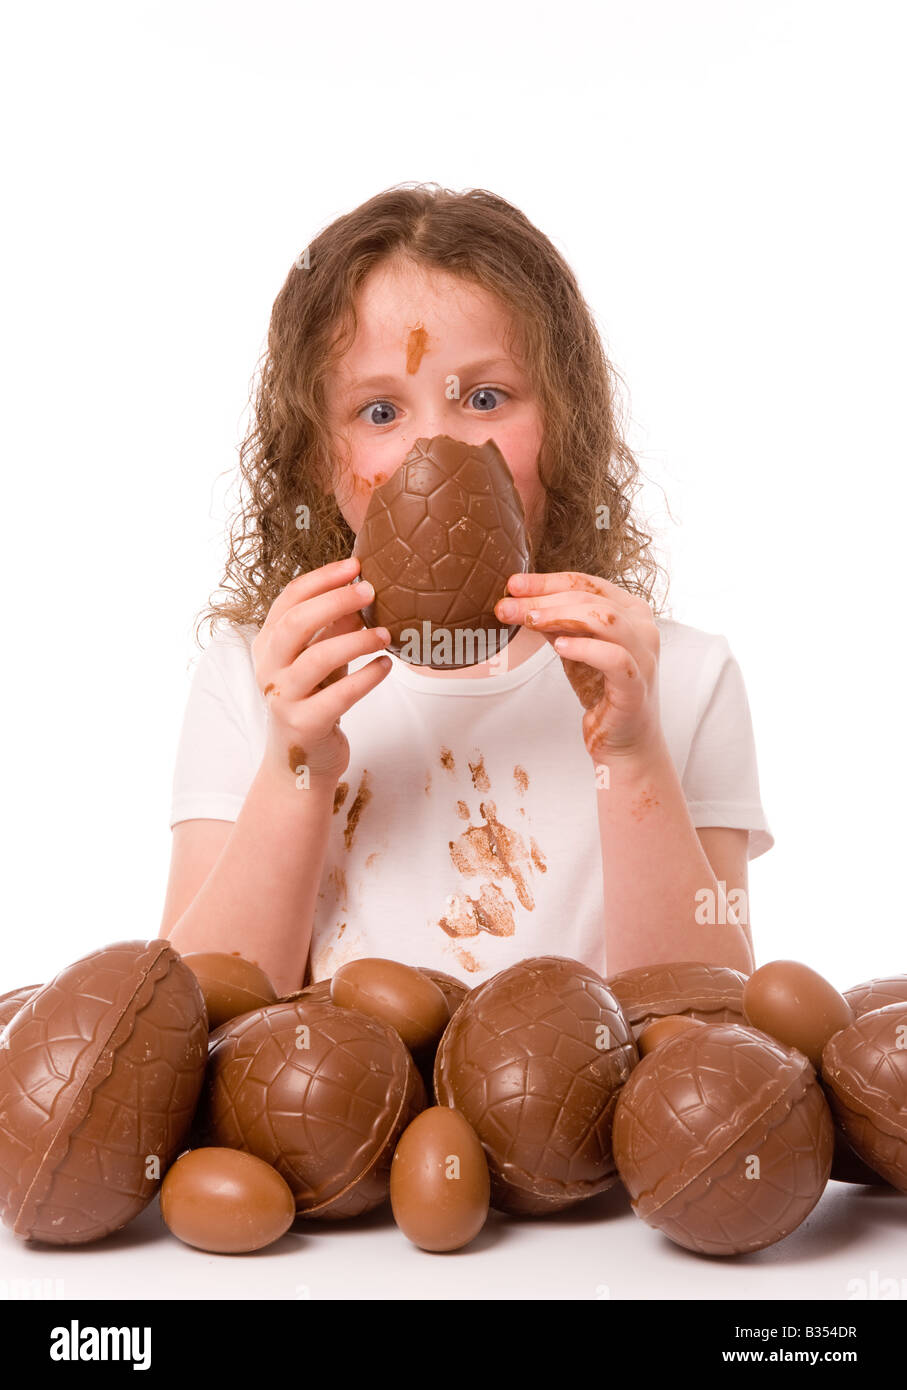 Ein kleines Kind starrt auf ein Stück Osterei, das sie vor ihrem mit Schokolade bedeckten Gesicht hält. Stockfoto